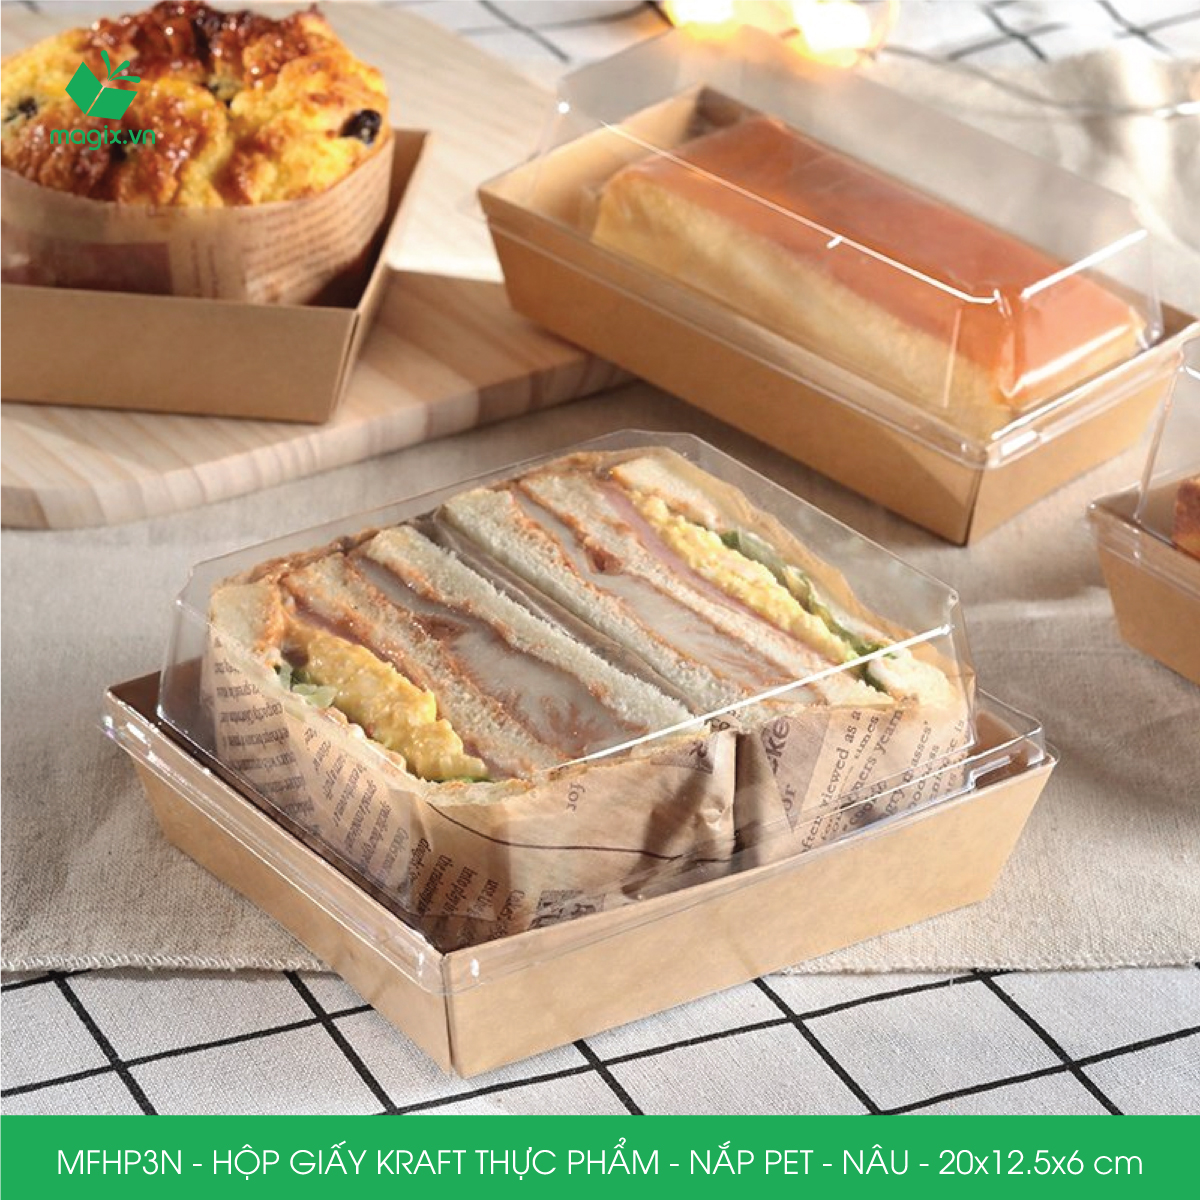 MFHP3N - 20x12.5x6 cm - 50 hộp giấy kraft thực phẩm màu nâu nắp Pet, hộp giấy chữ nhật đựng thức ăn, hộp bánh nắp trong